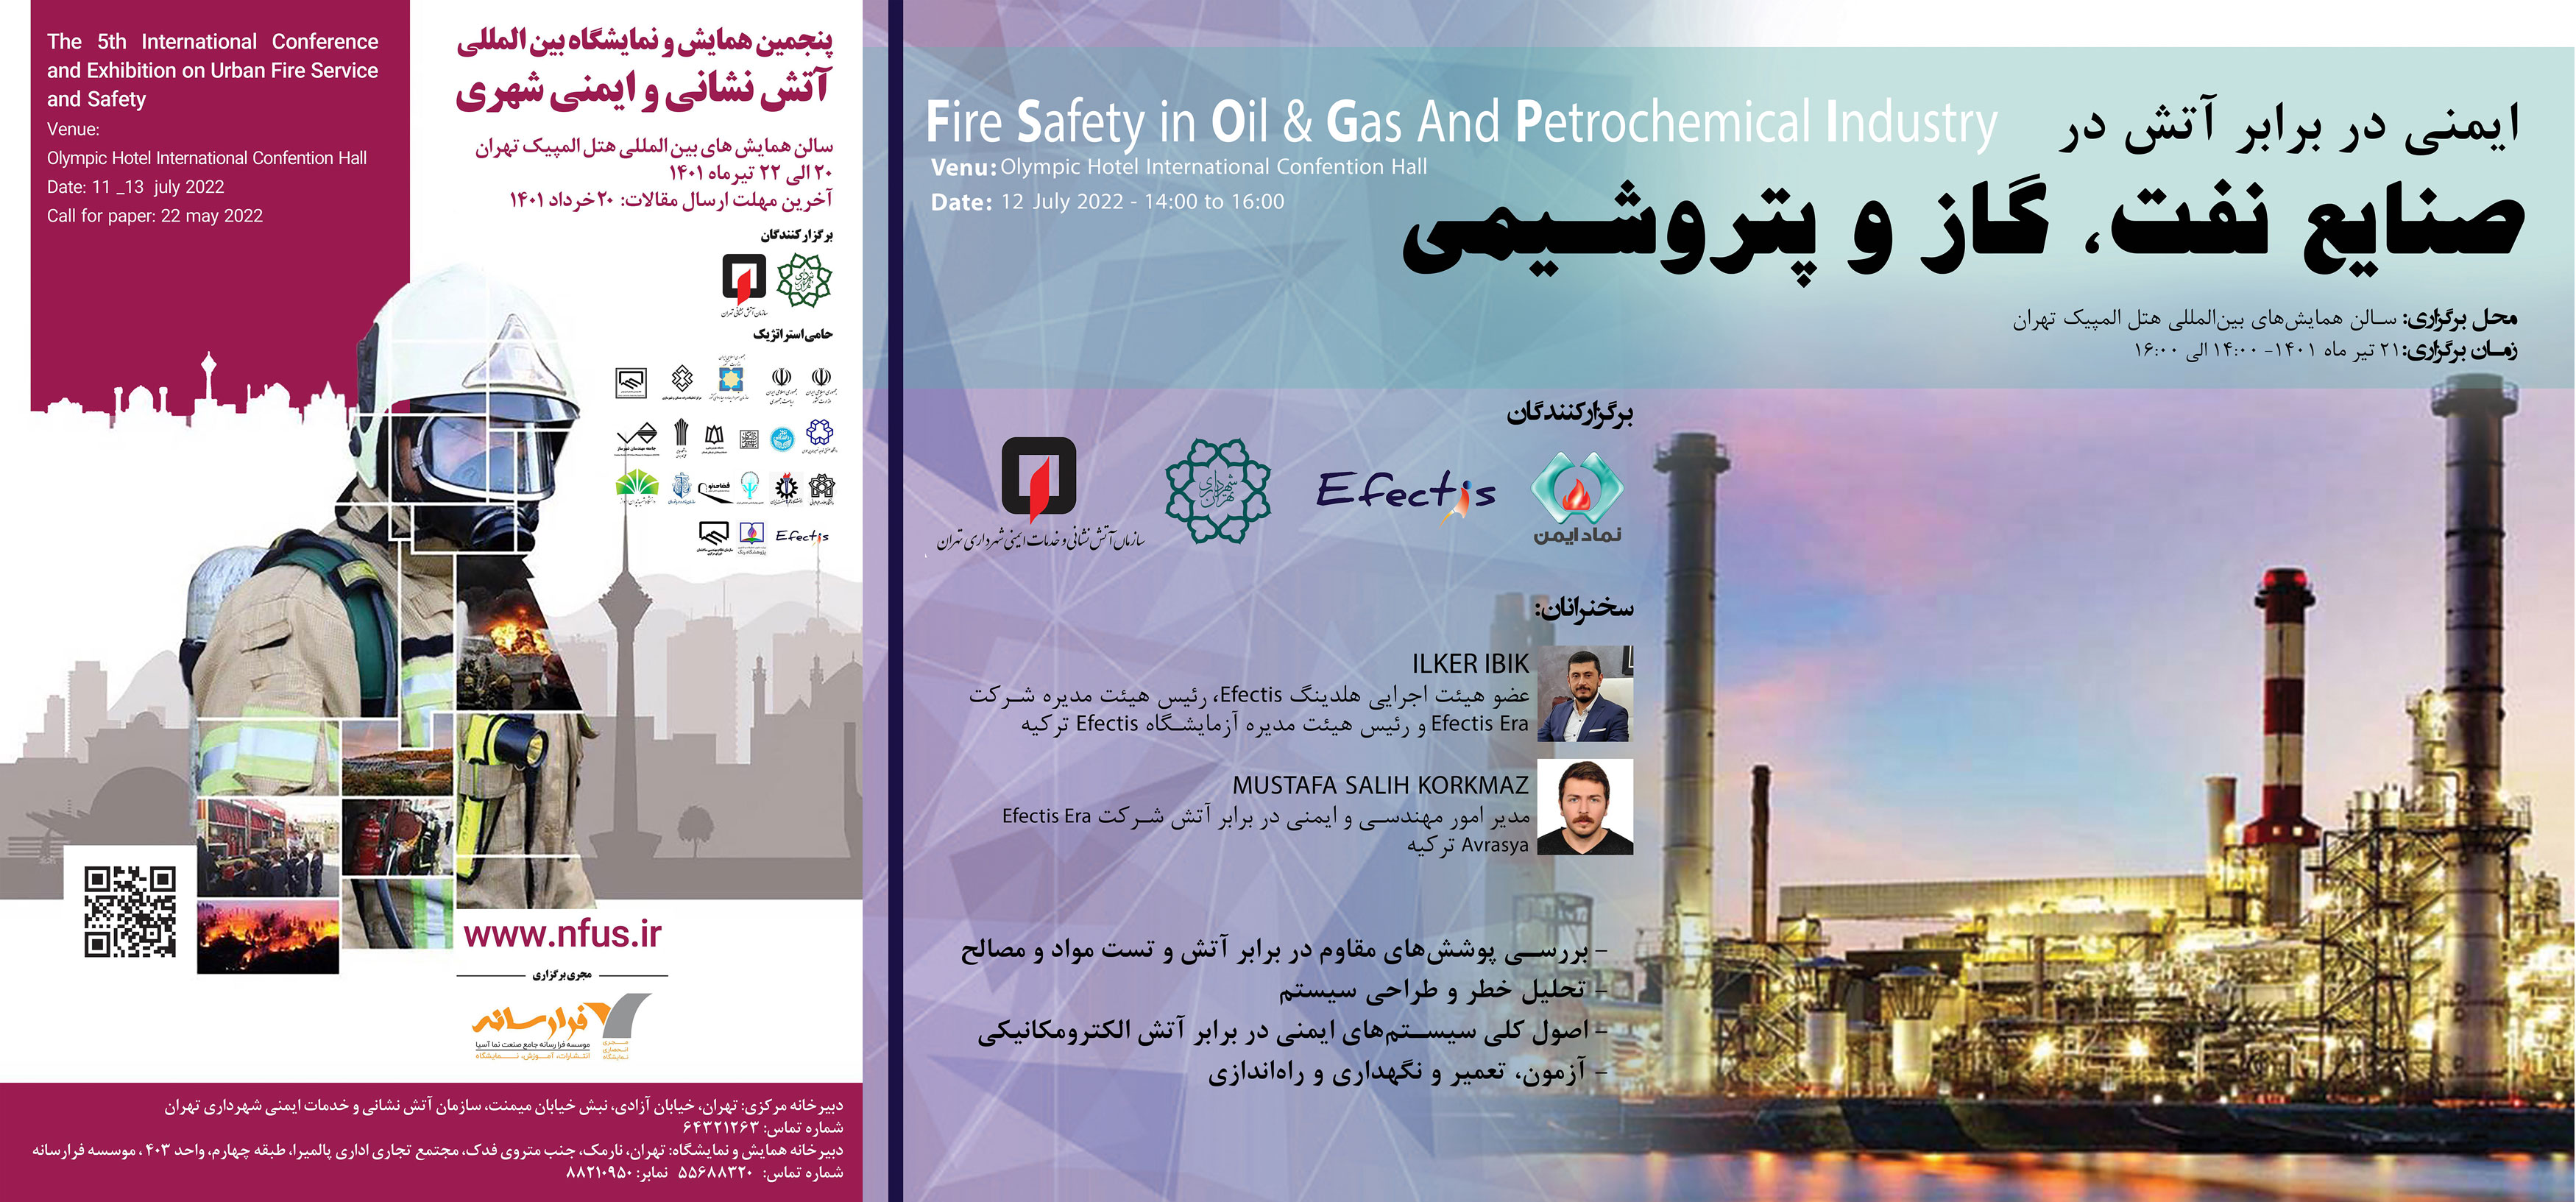 کارگاه تخصصی ایمنی در برابر آتش در صنایع نفت، گاز و پتروشیمی